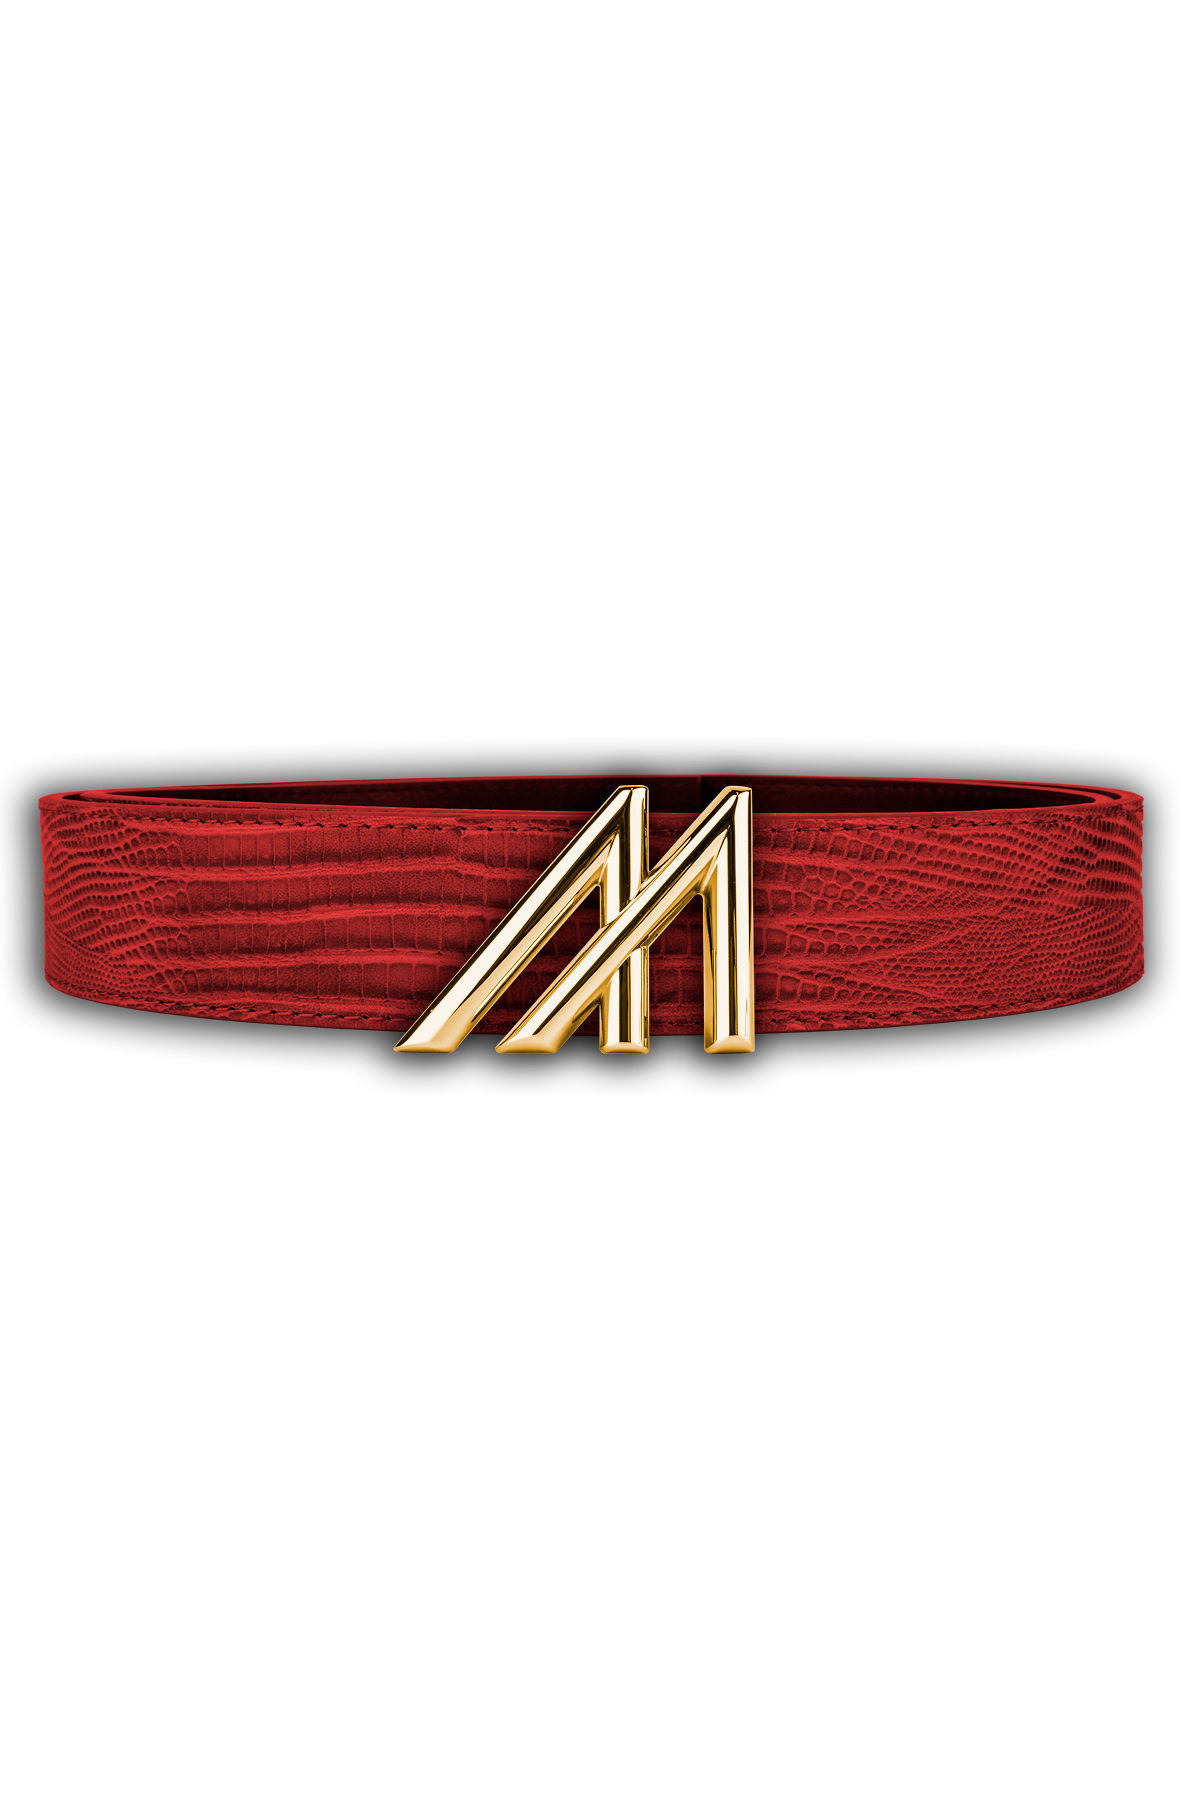 Mint Lizard Leather Belt - Red